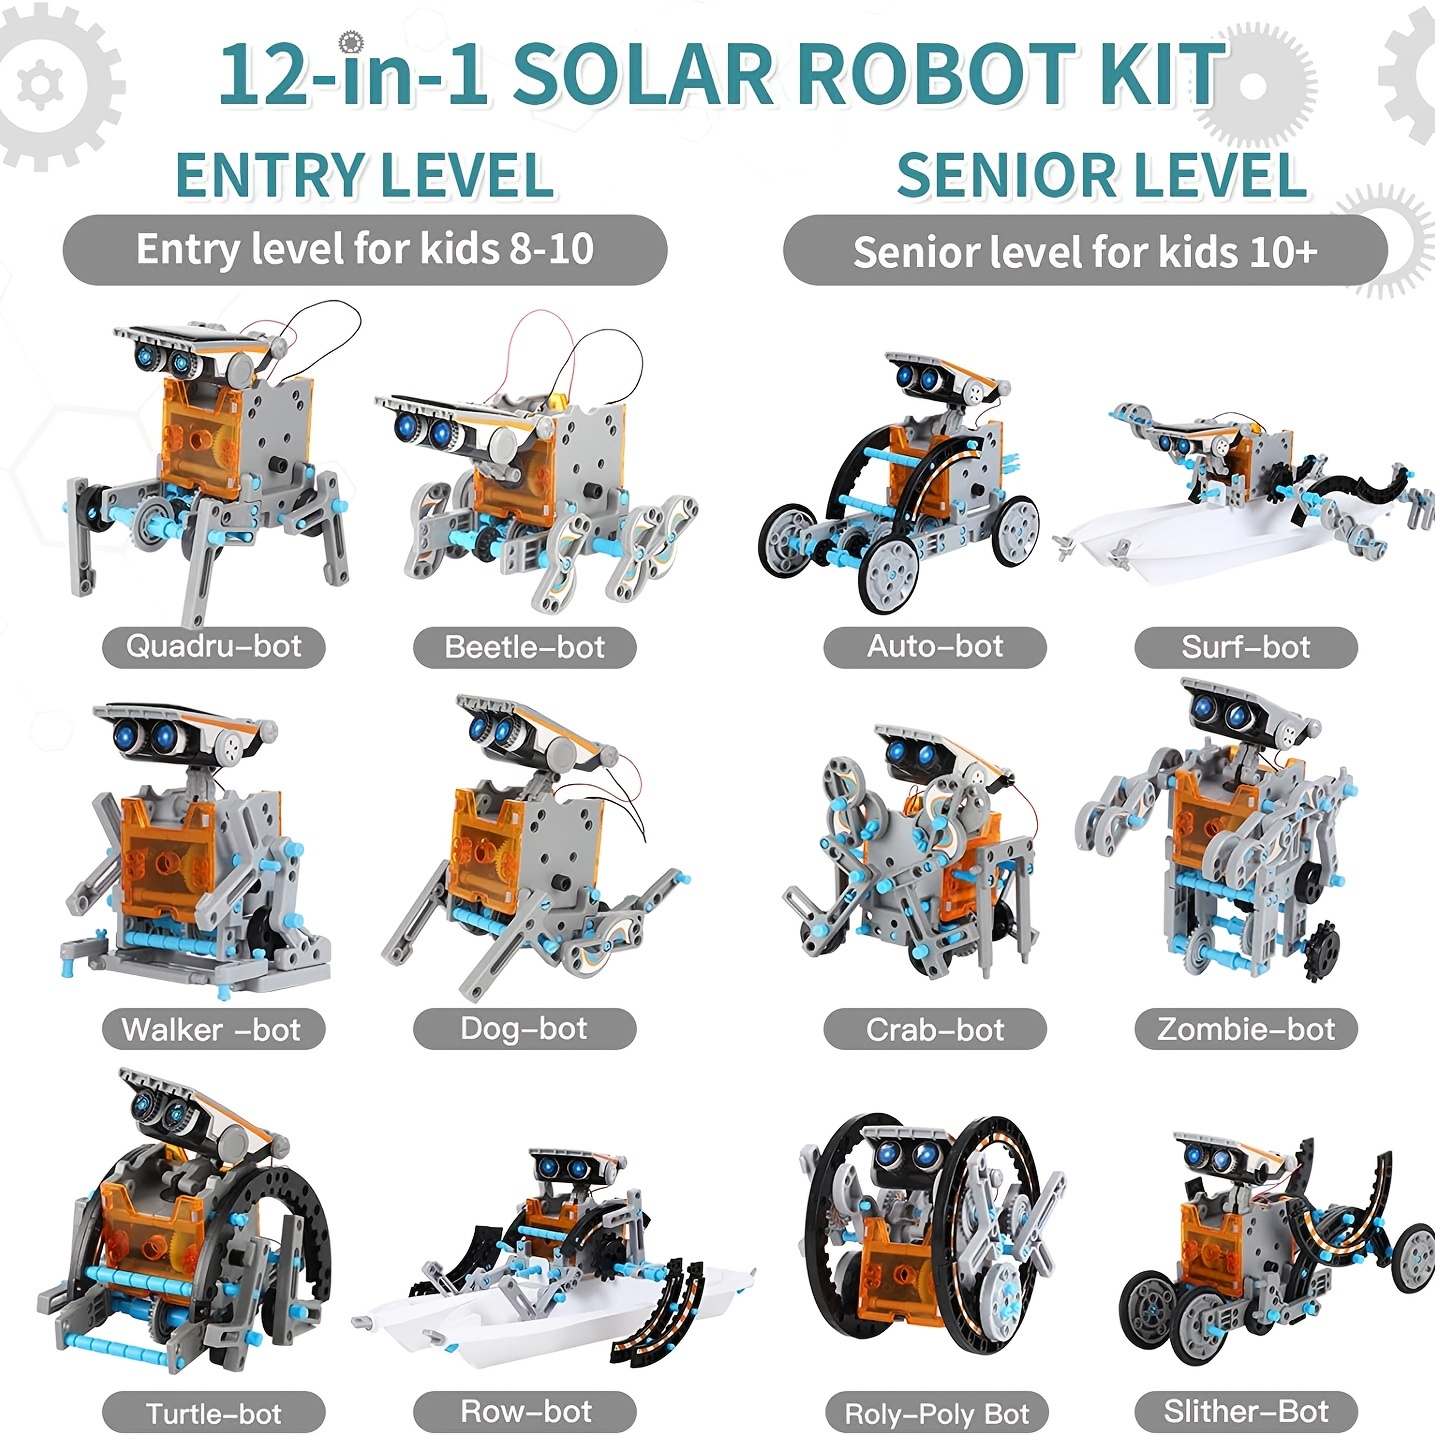 Juguete Educativo Robot Solar Regalo Para Niños 8 A 14 Años